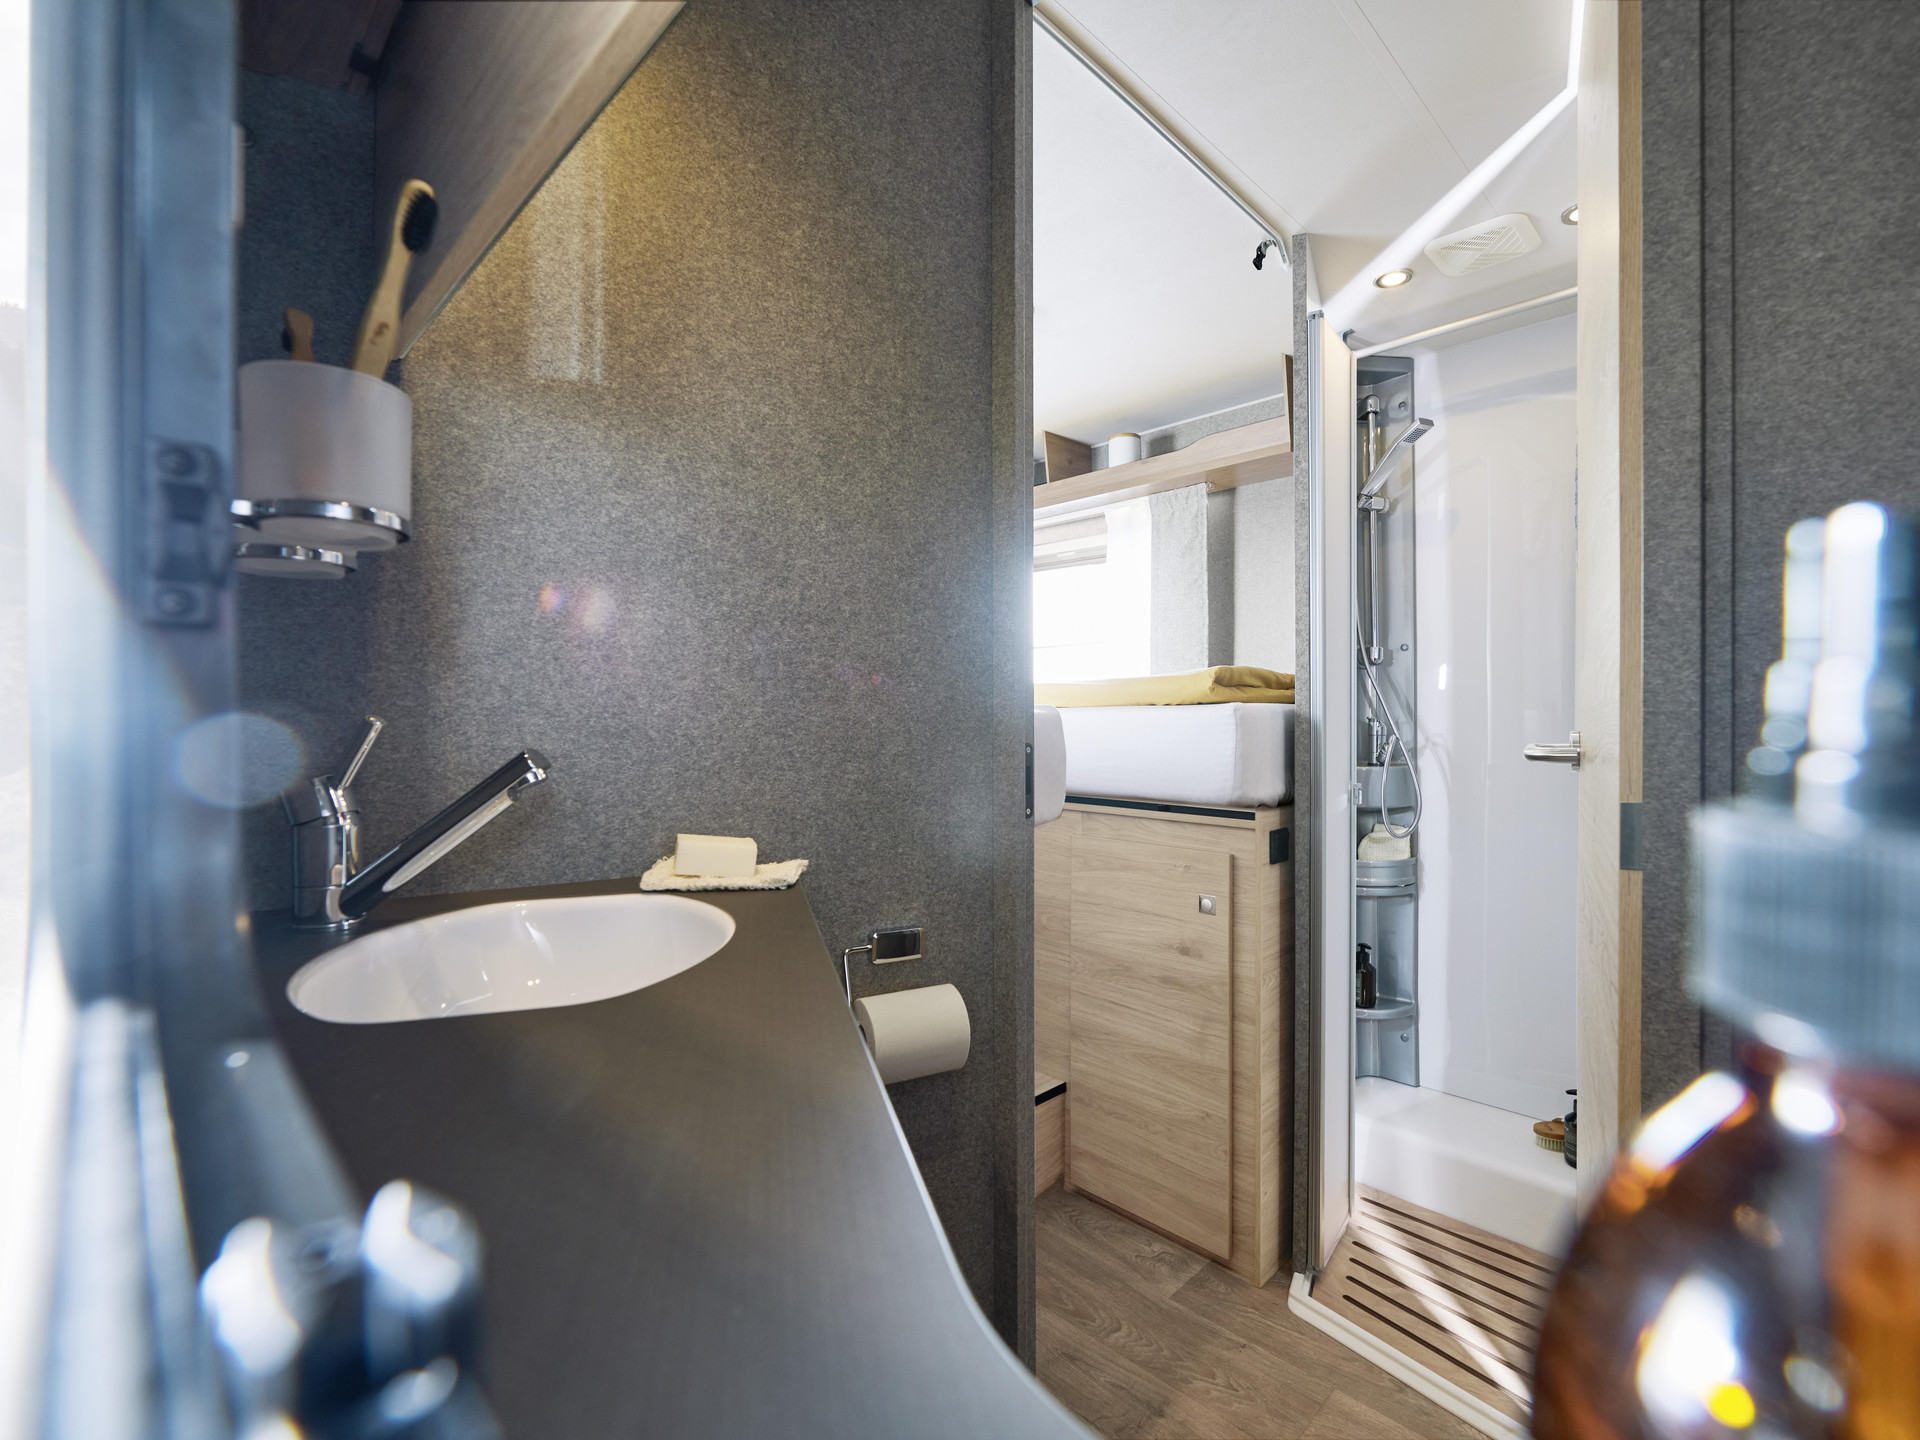 Wysokiej jakości materiały i wykonanie nadają łazience luksusowy charakter.